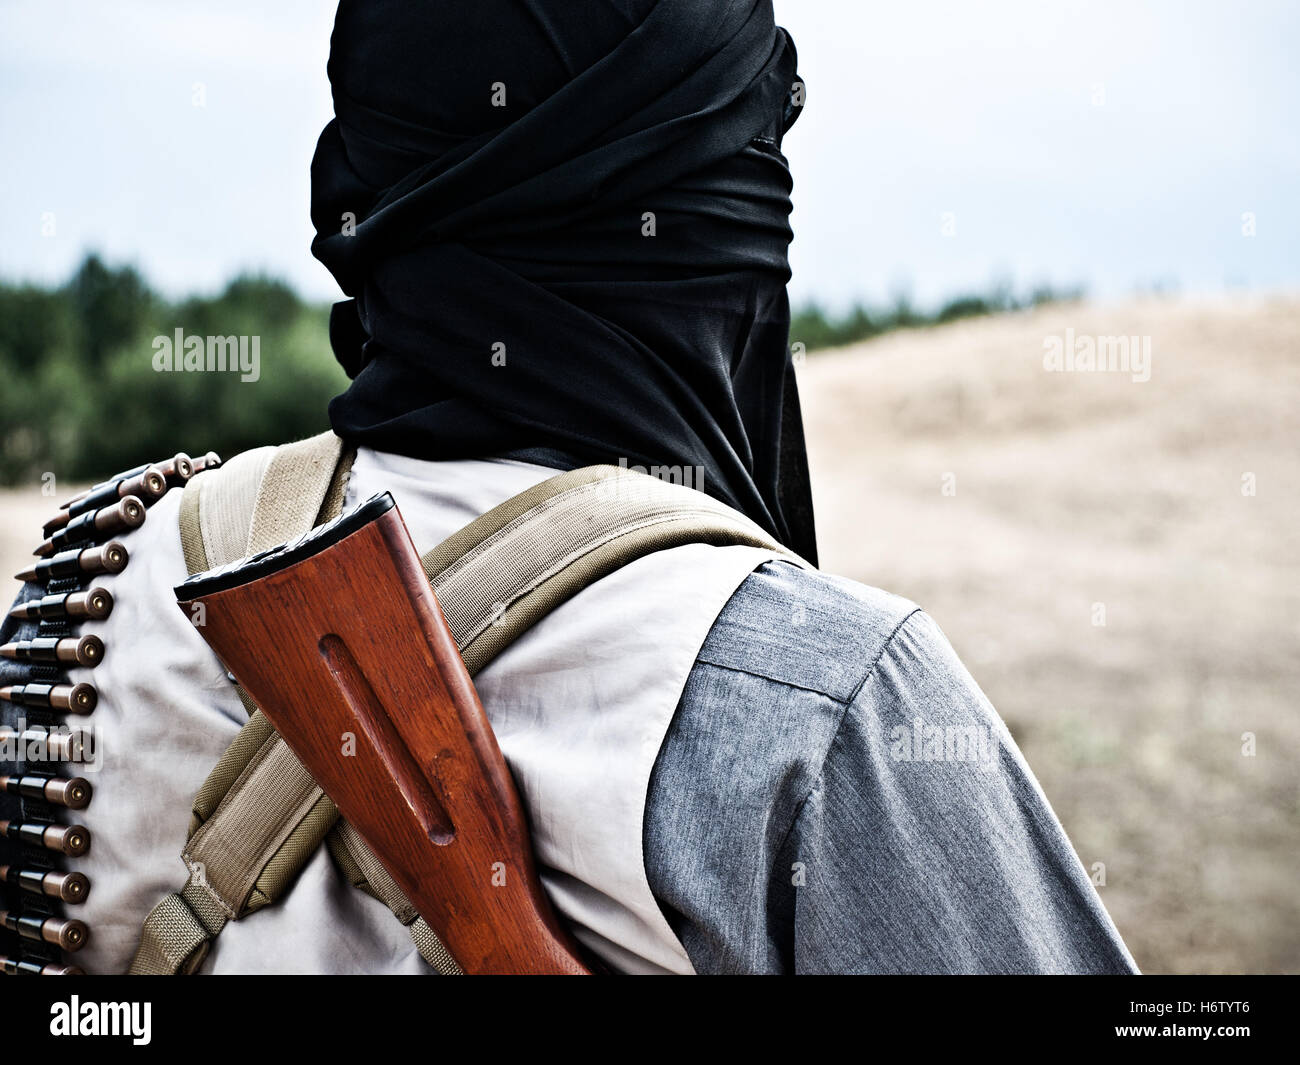 Religion Konflikt Armee Libyen Krieg Soldat Syrien Gewehr Arm Waffe Islam islamische militärische Krieger muslimischen Pistole Waffe feindliche Rebellen Stockfoto